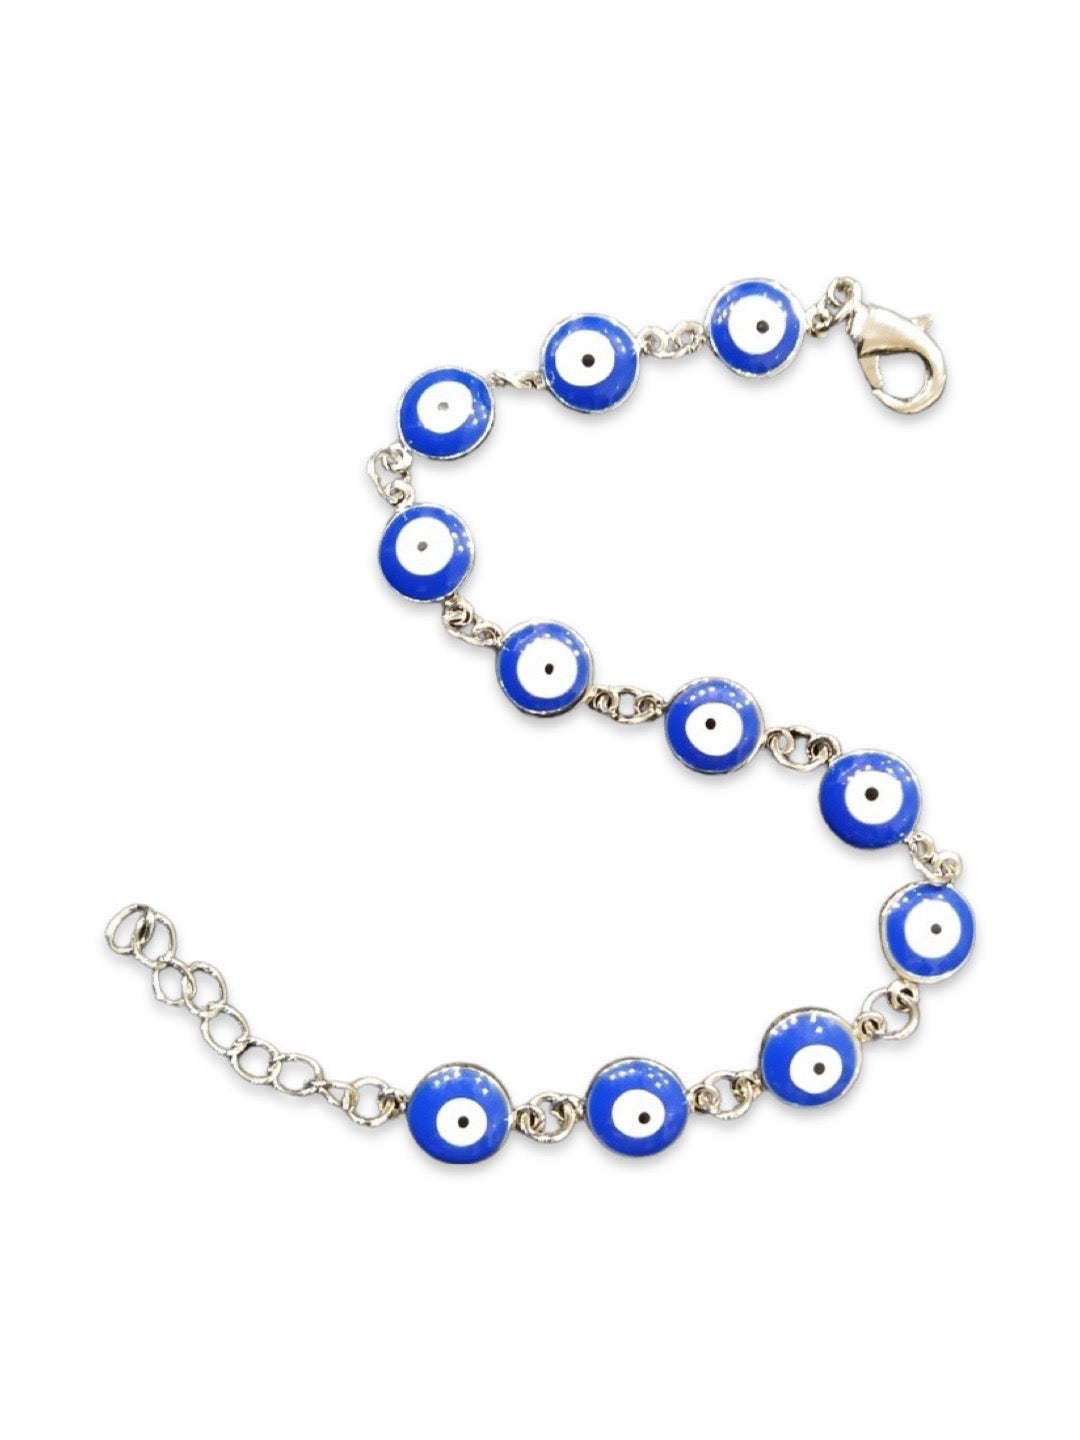 Latest Blue Evil Eye Design Silver Plated Adjustable Wrist Bracelet